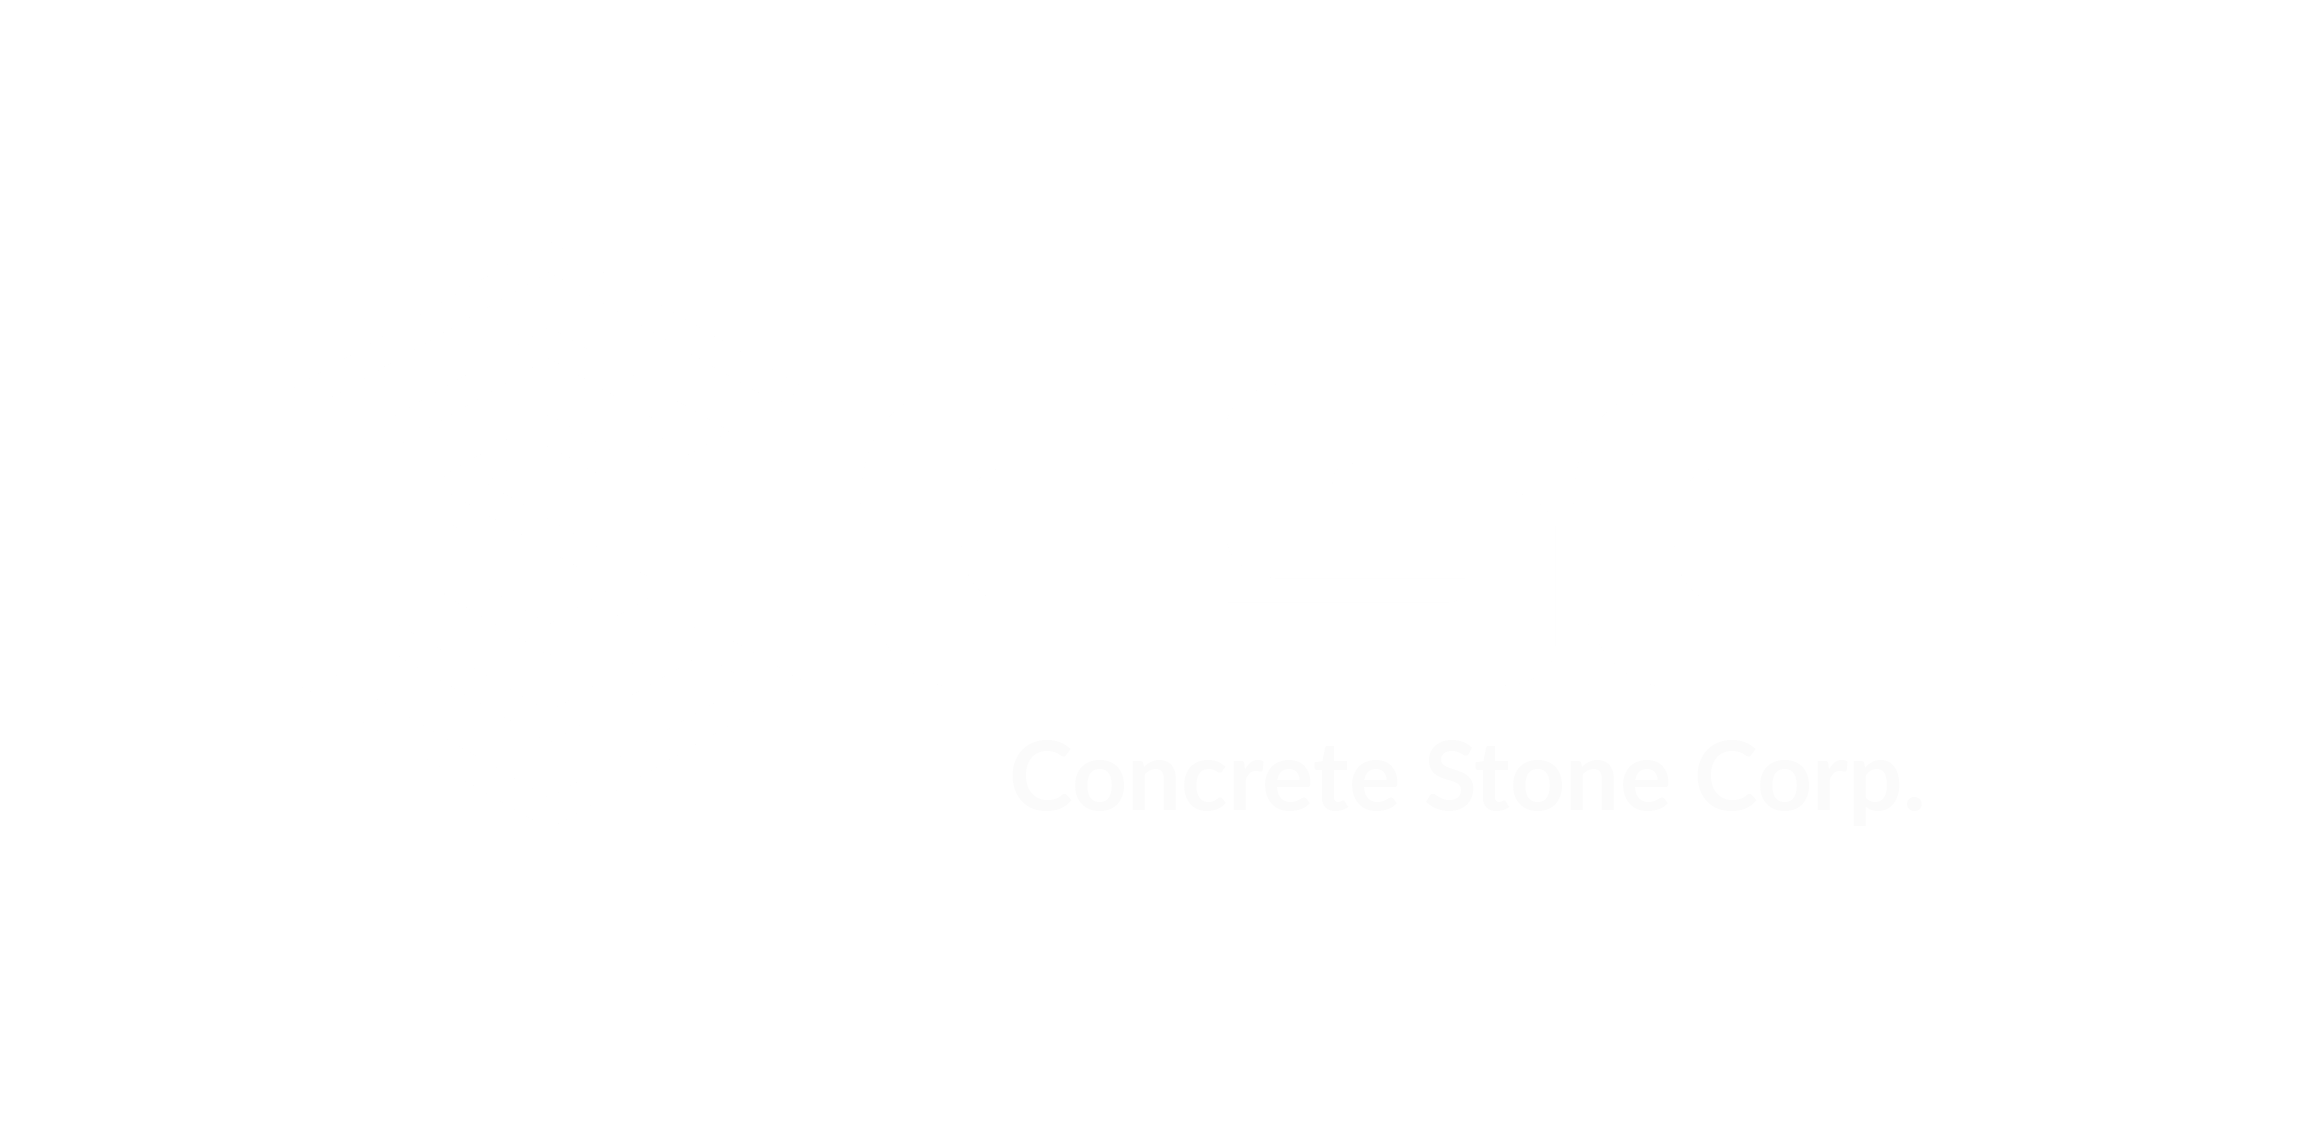 Concrete Stone Corp